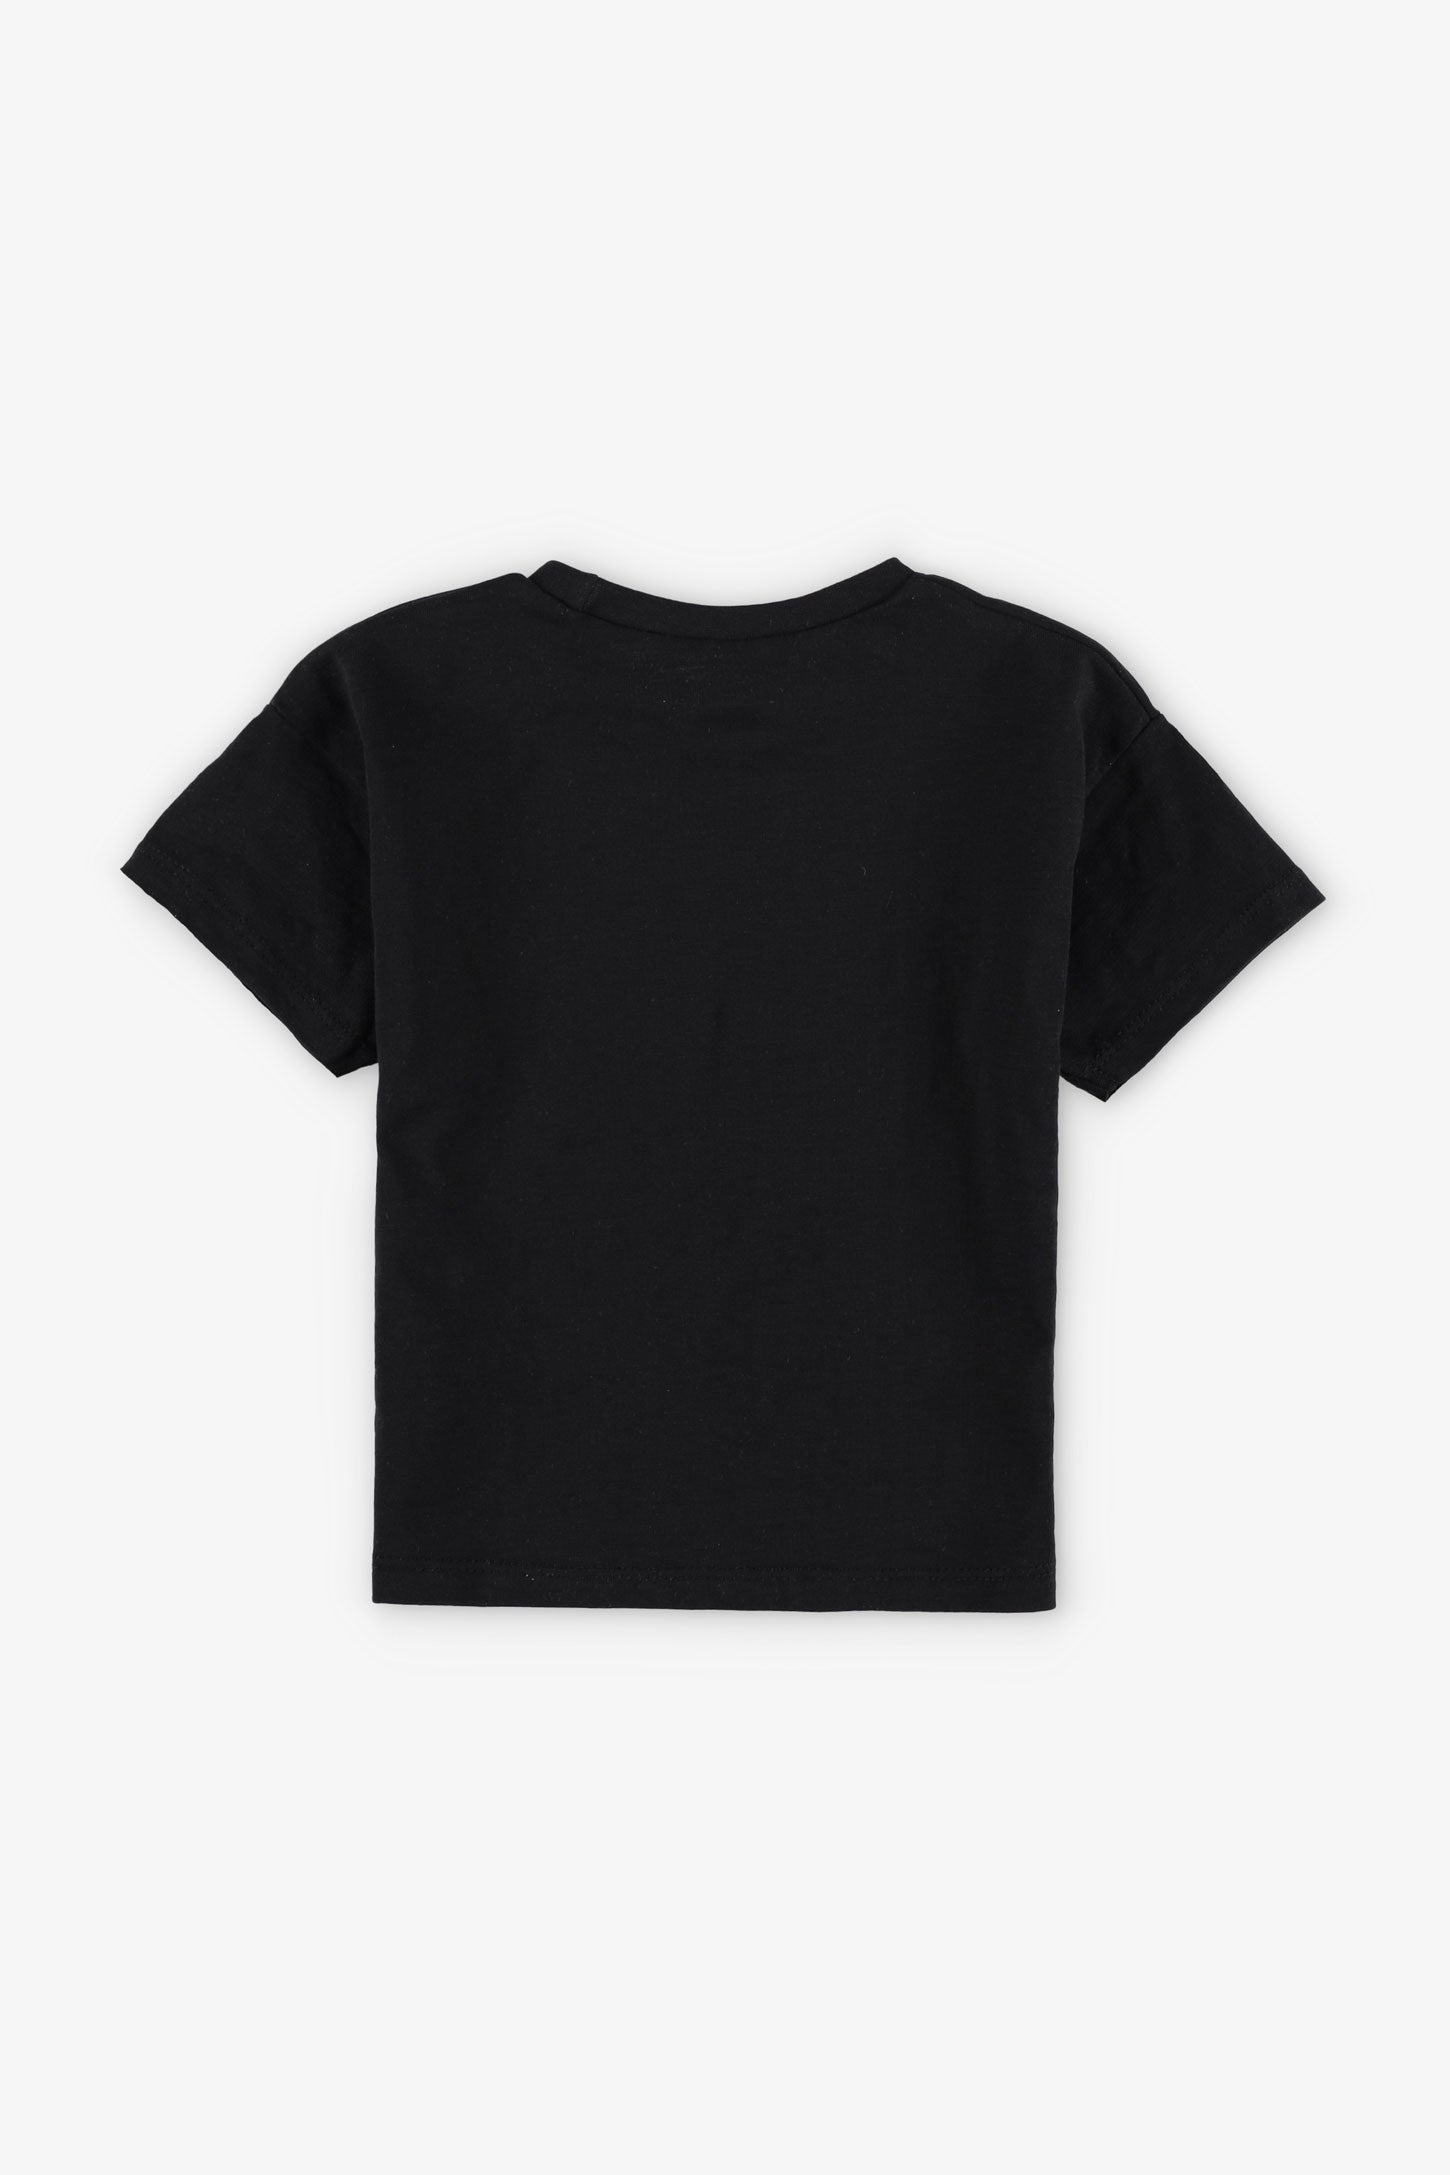 T-shirt coupe ample en coton, 2T-3T, 2/15$ - Bébé garçon && NOIR